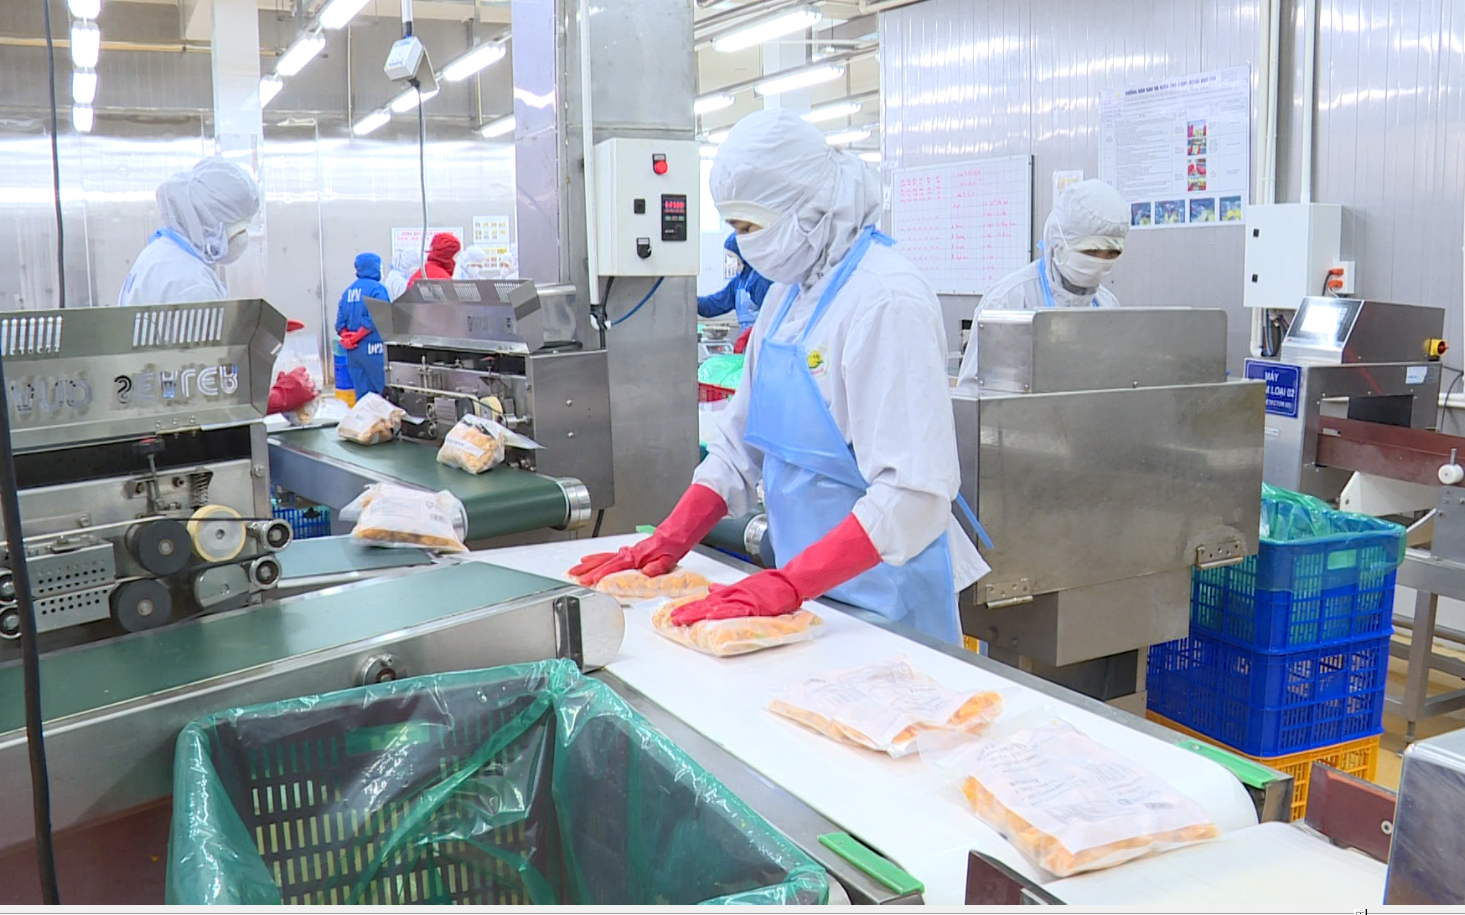 Lâm Đồng được công nhận 5 sản phẩm công nghiệp nông thôn tiêu biểu cấp quốc gia